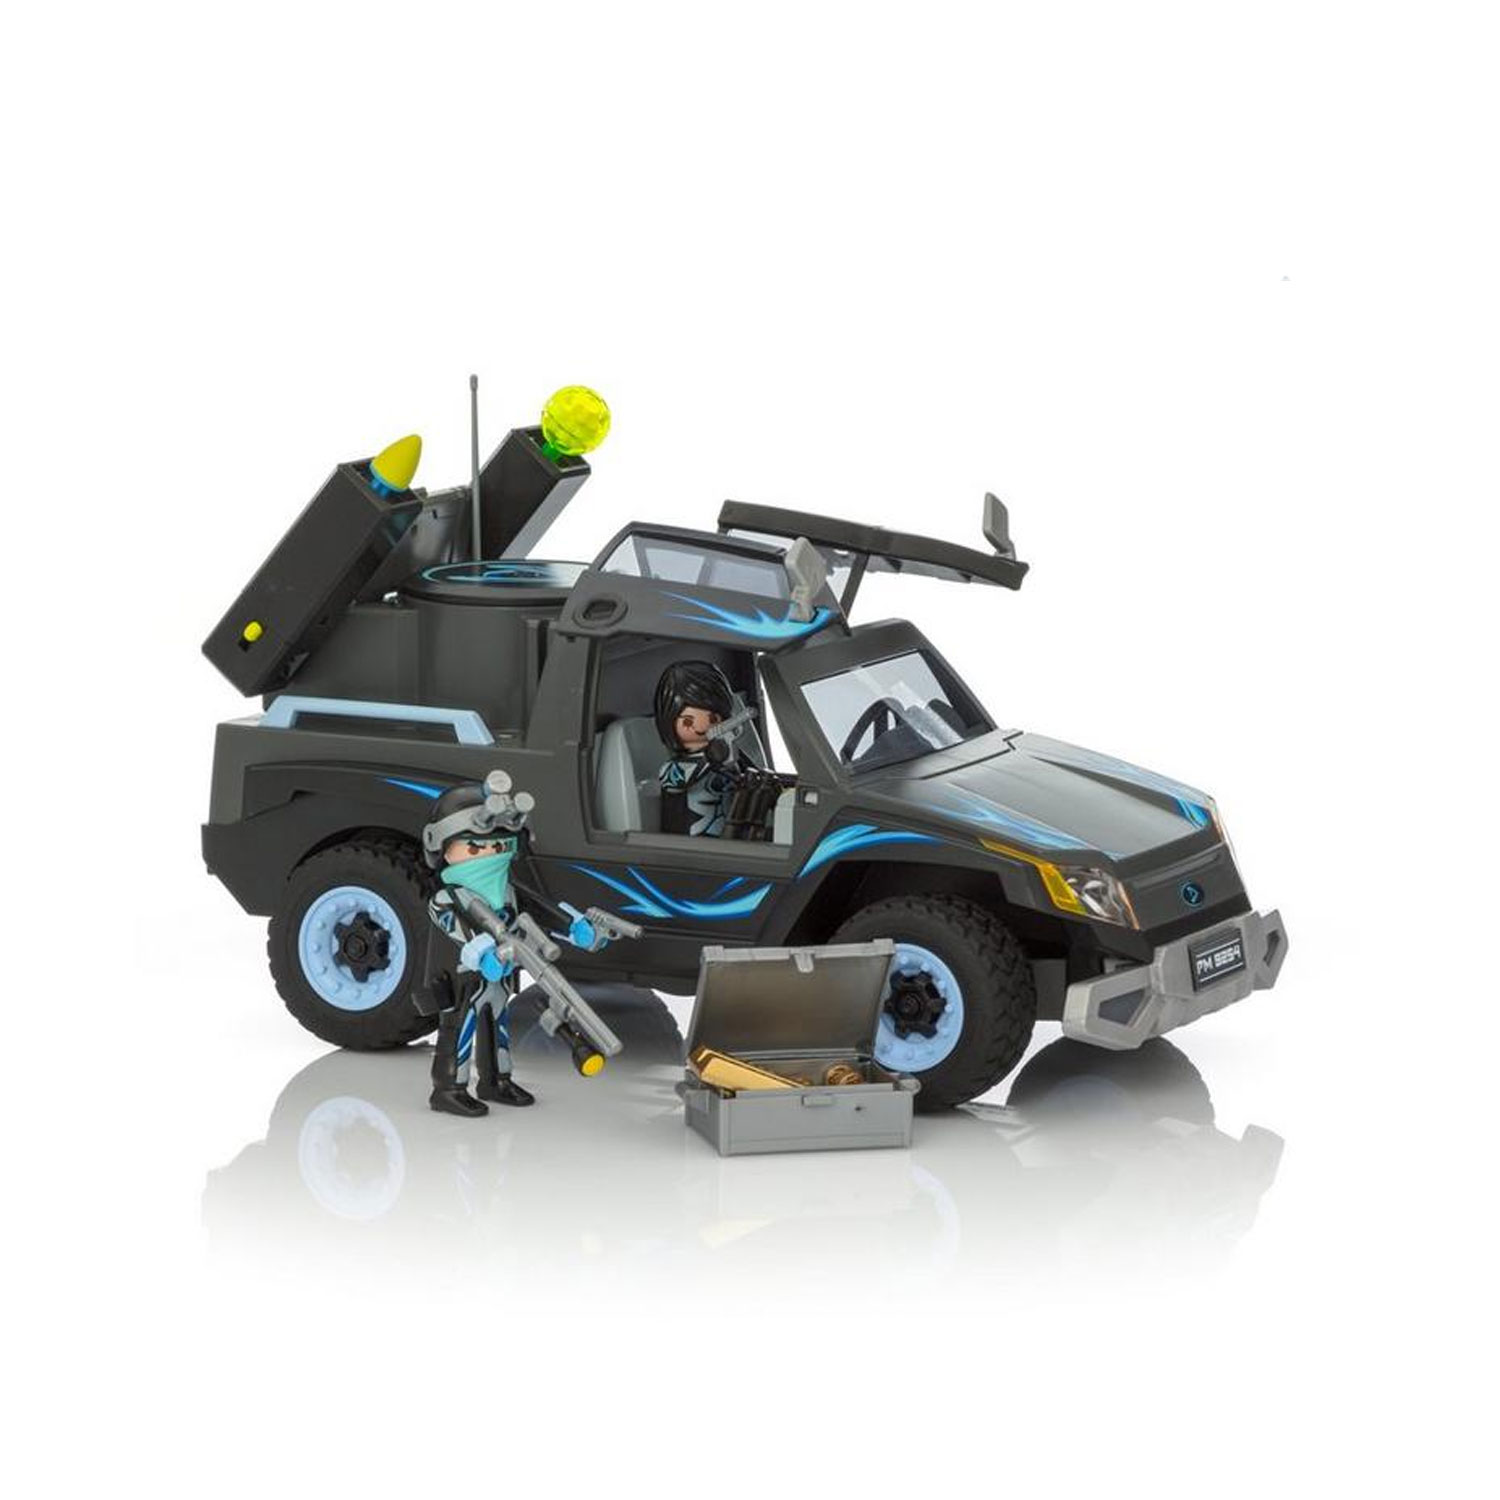 Playmobil RC 9254 - Playmobil